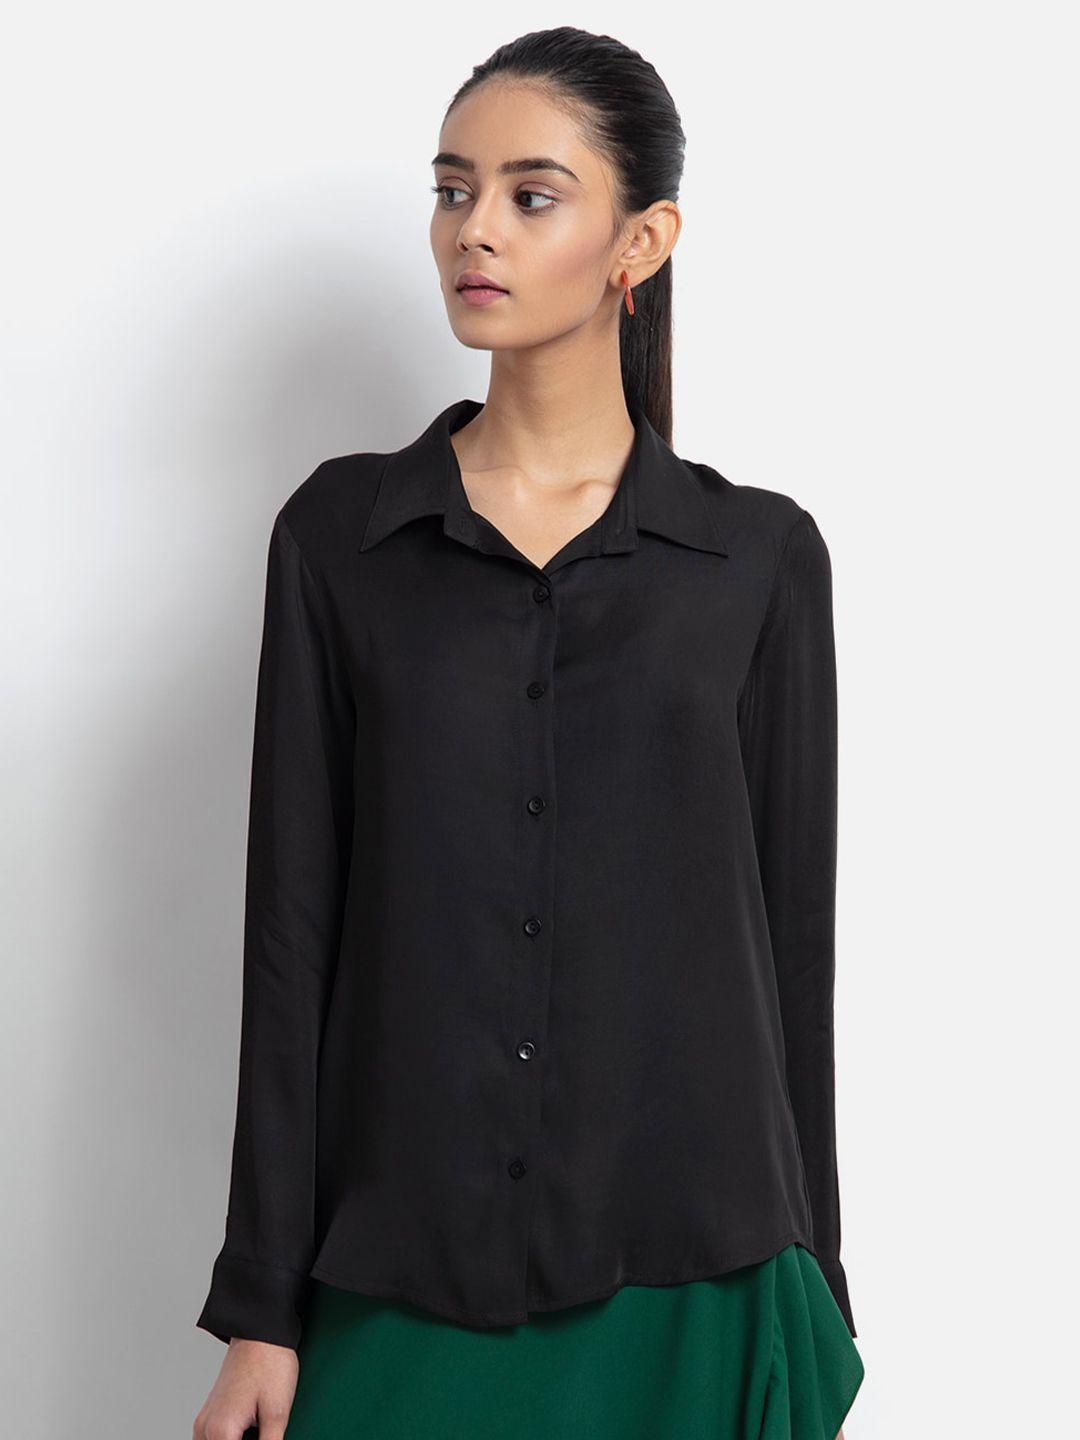 shaye women black opaque casual shirt